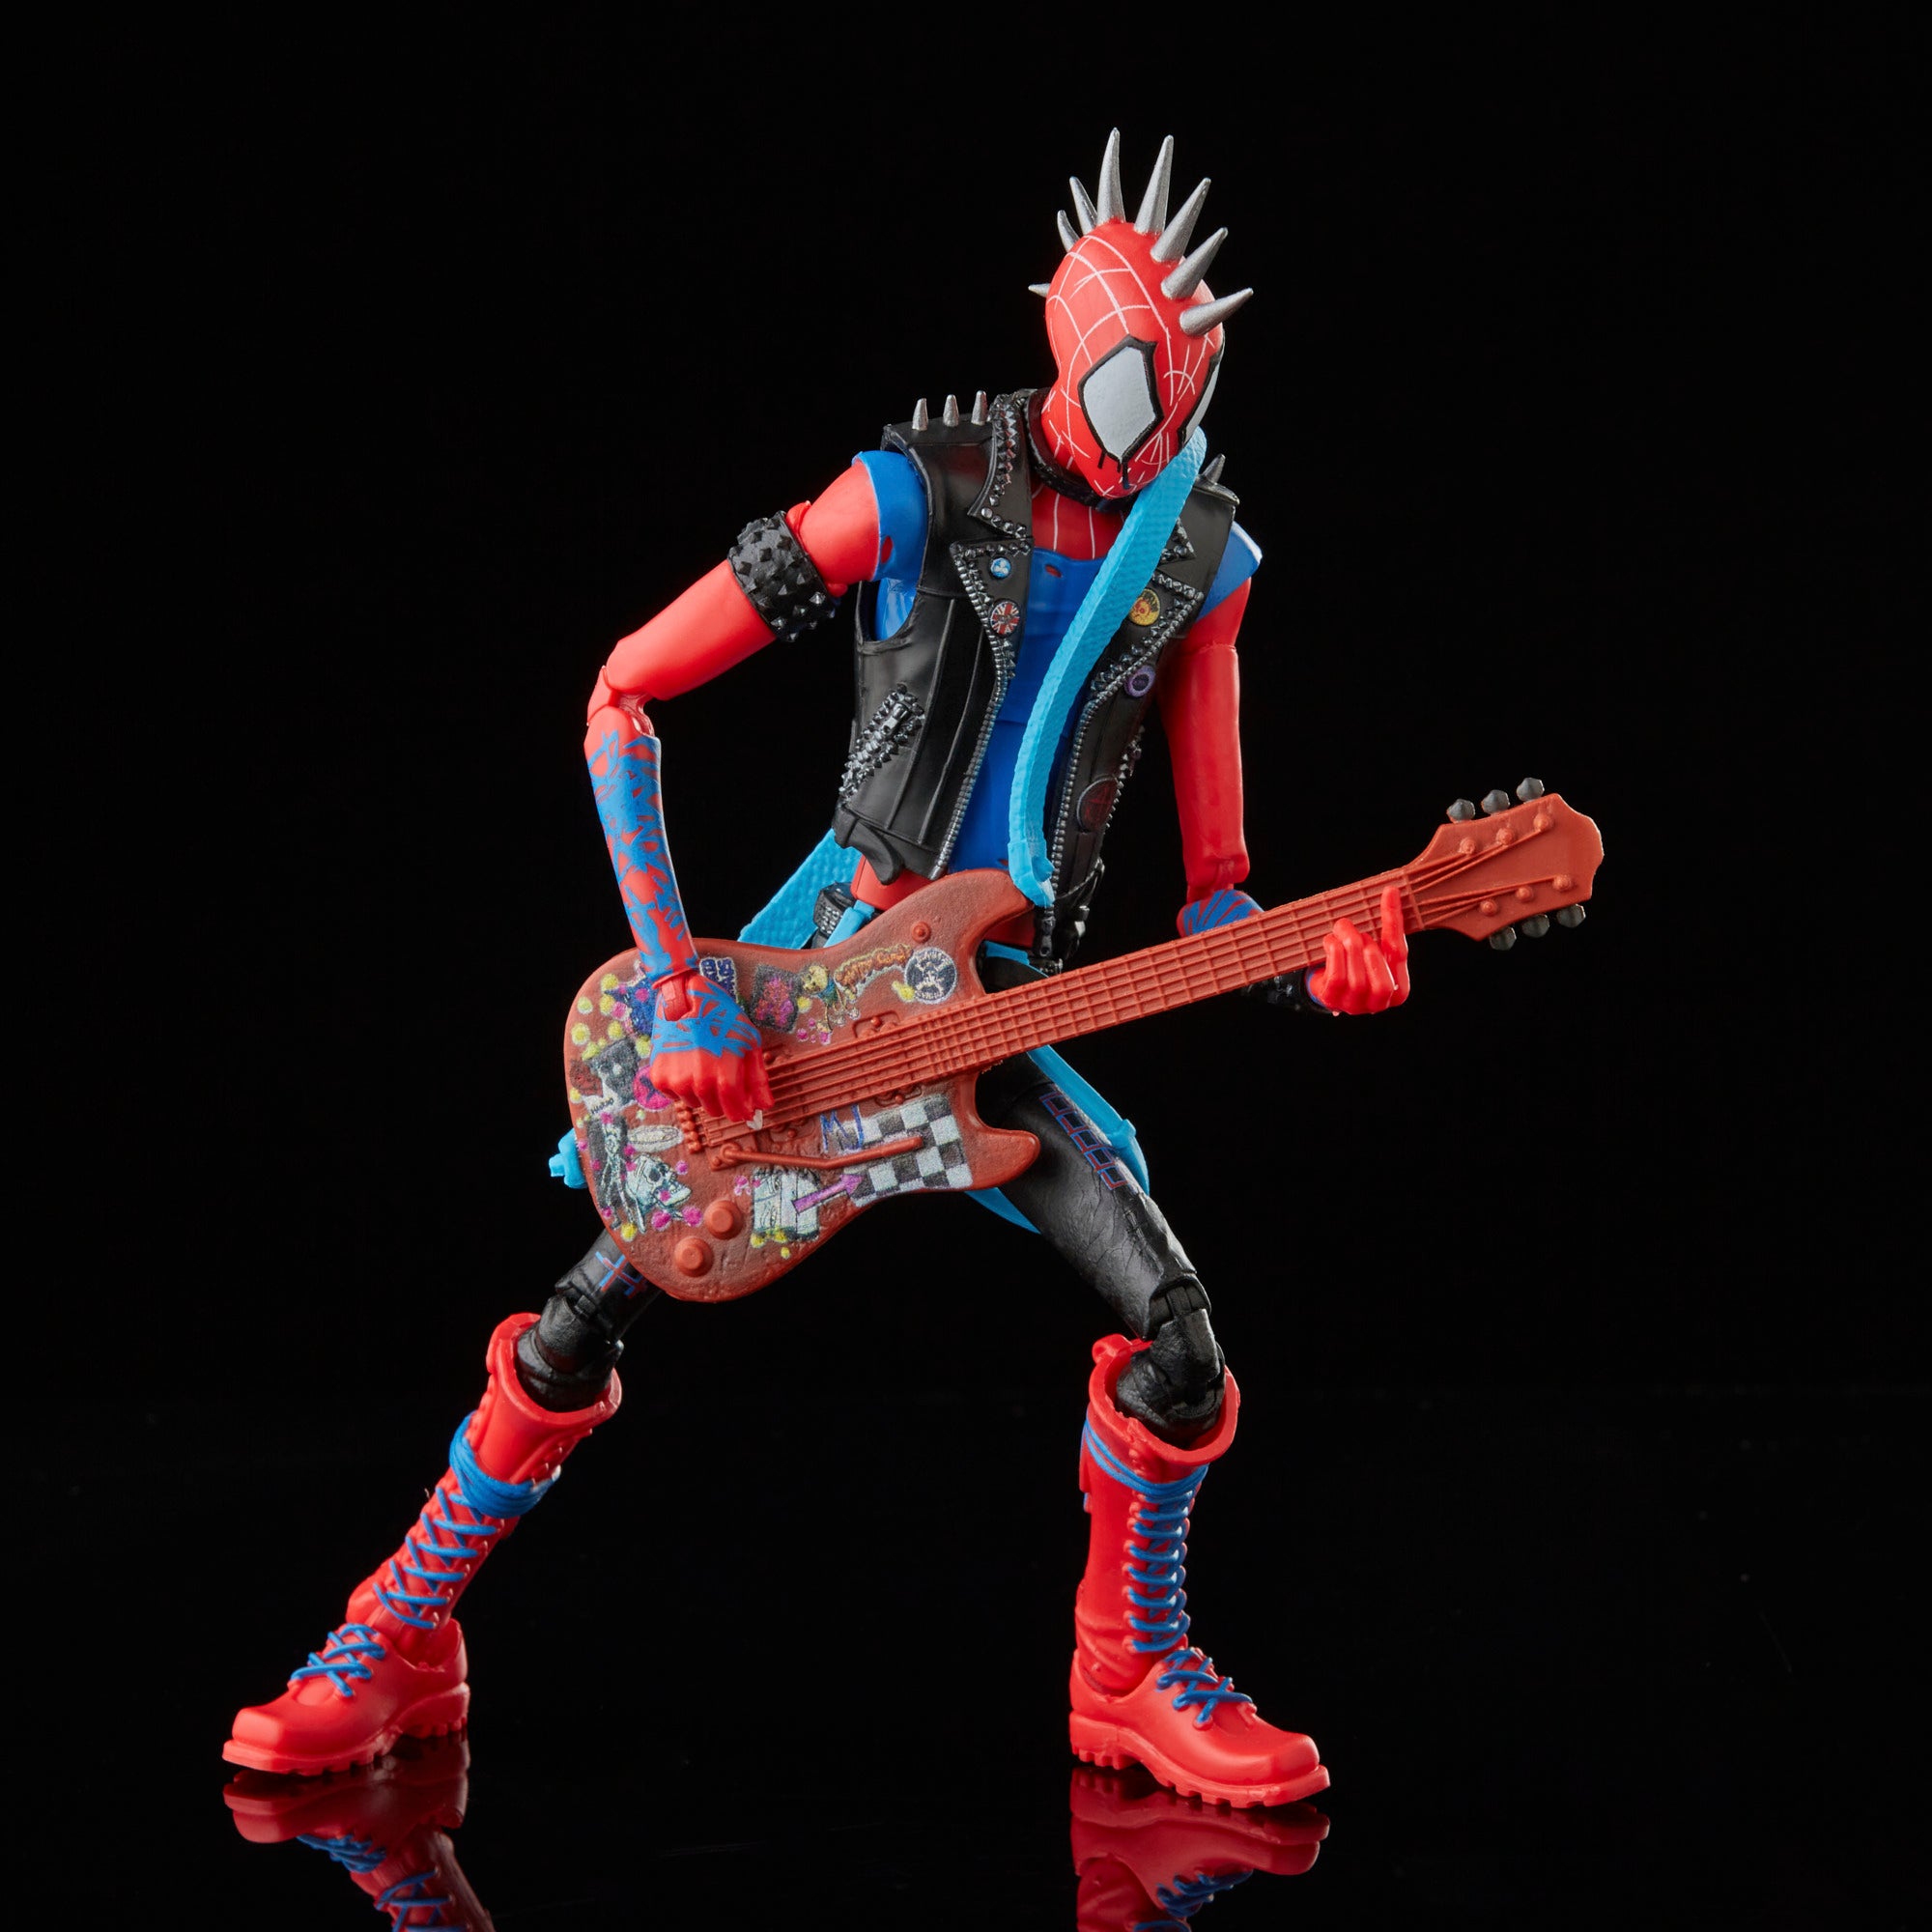 Bonecos de Aranhaverso 2 - Homem Aranha Através do Aranhaverso - Spider Punk Hobie Brown - Blog Farofeiros